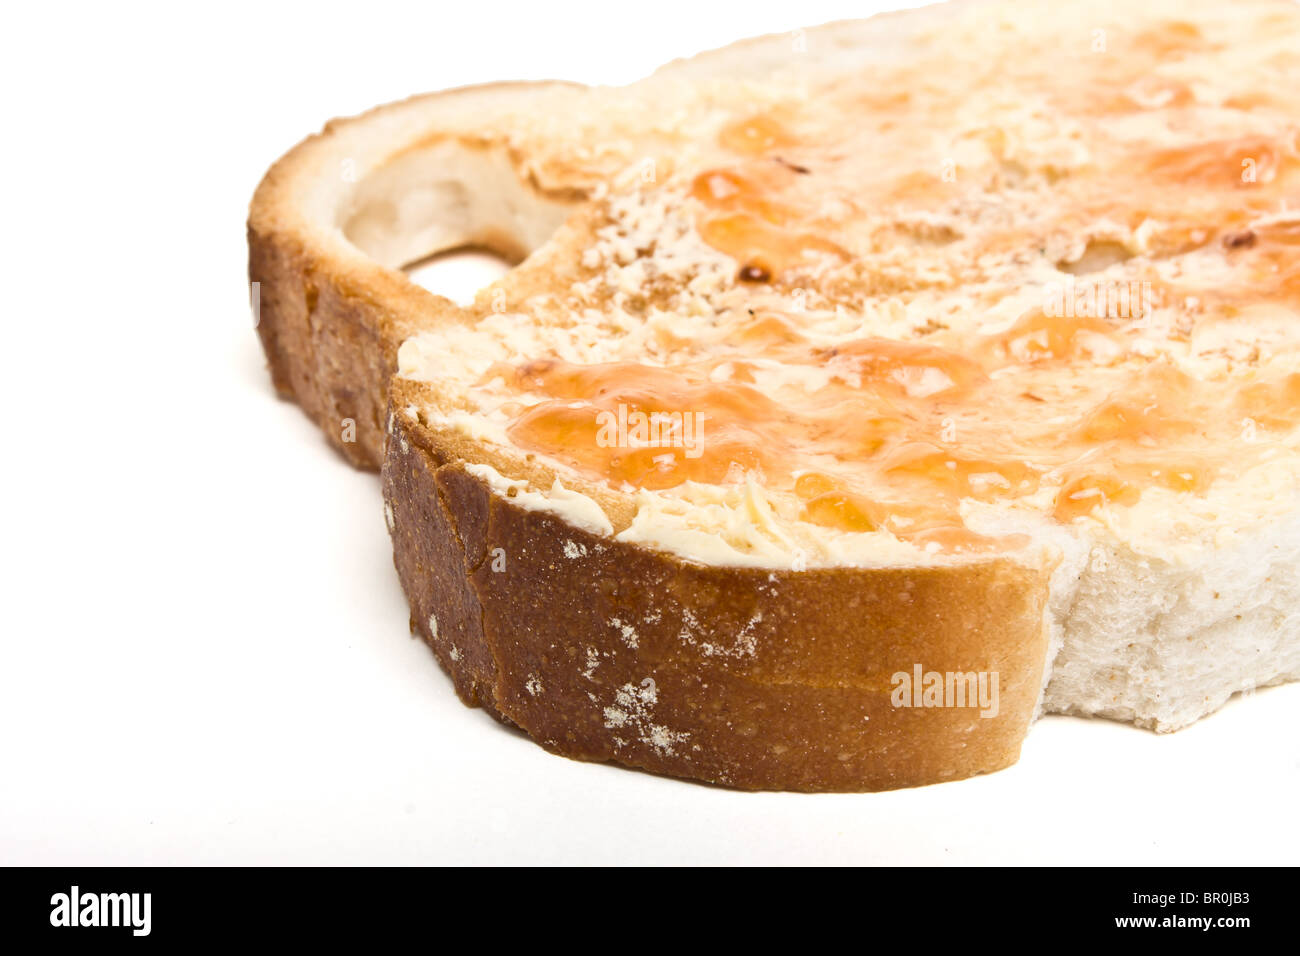 Fetta di pane tostato imburrato con fatti in casa confettura di prugne. Foto Stock